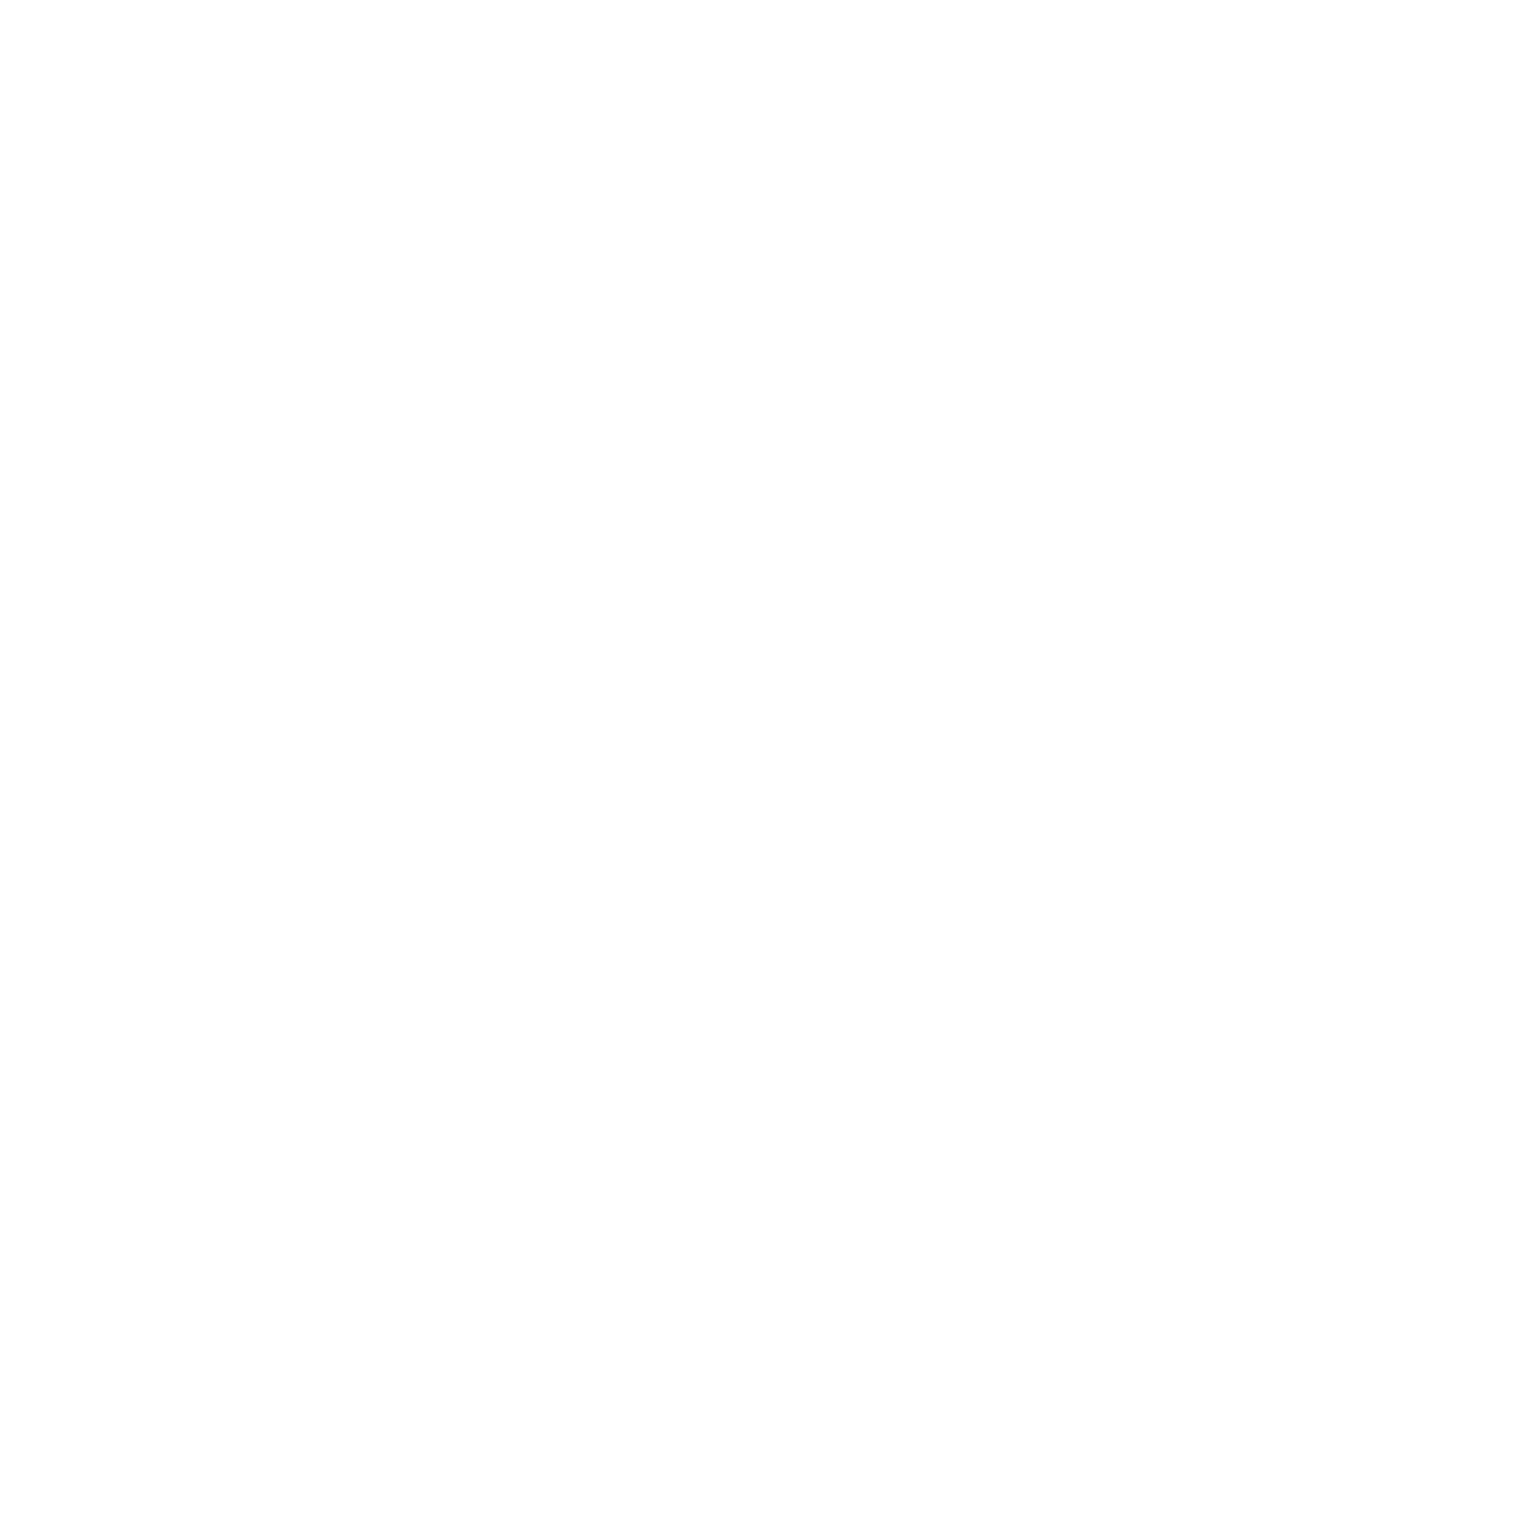 Producción y Consumo Responsable